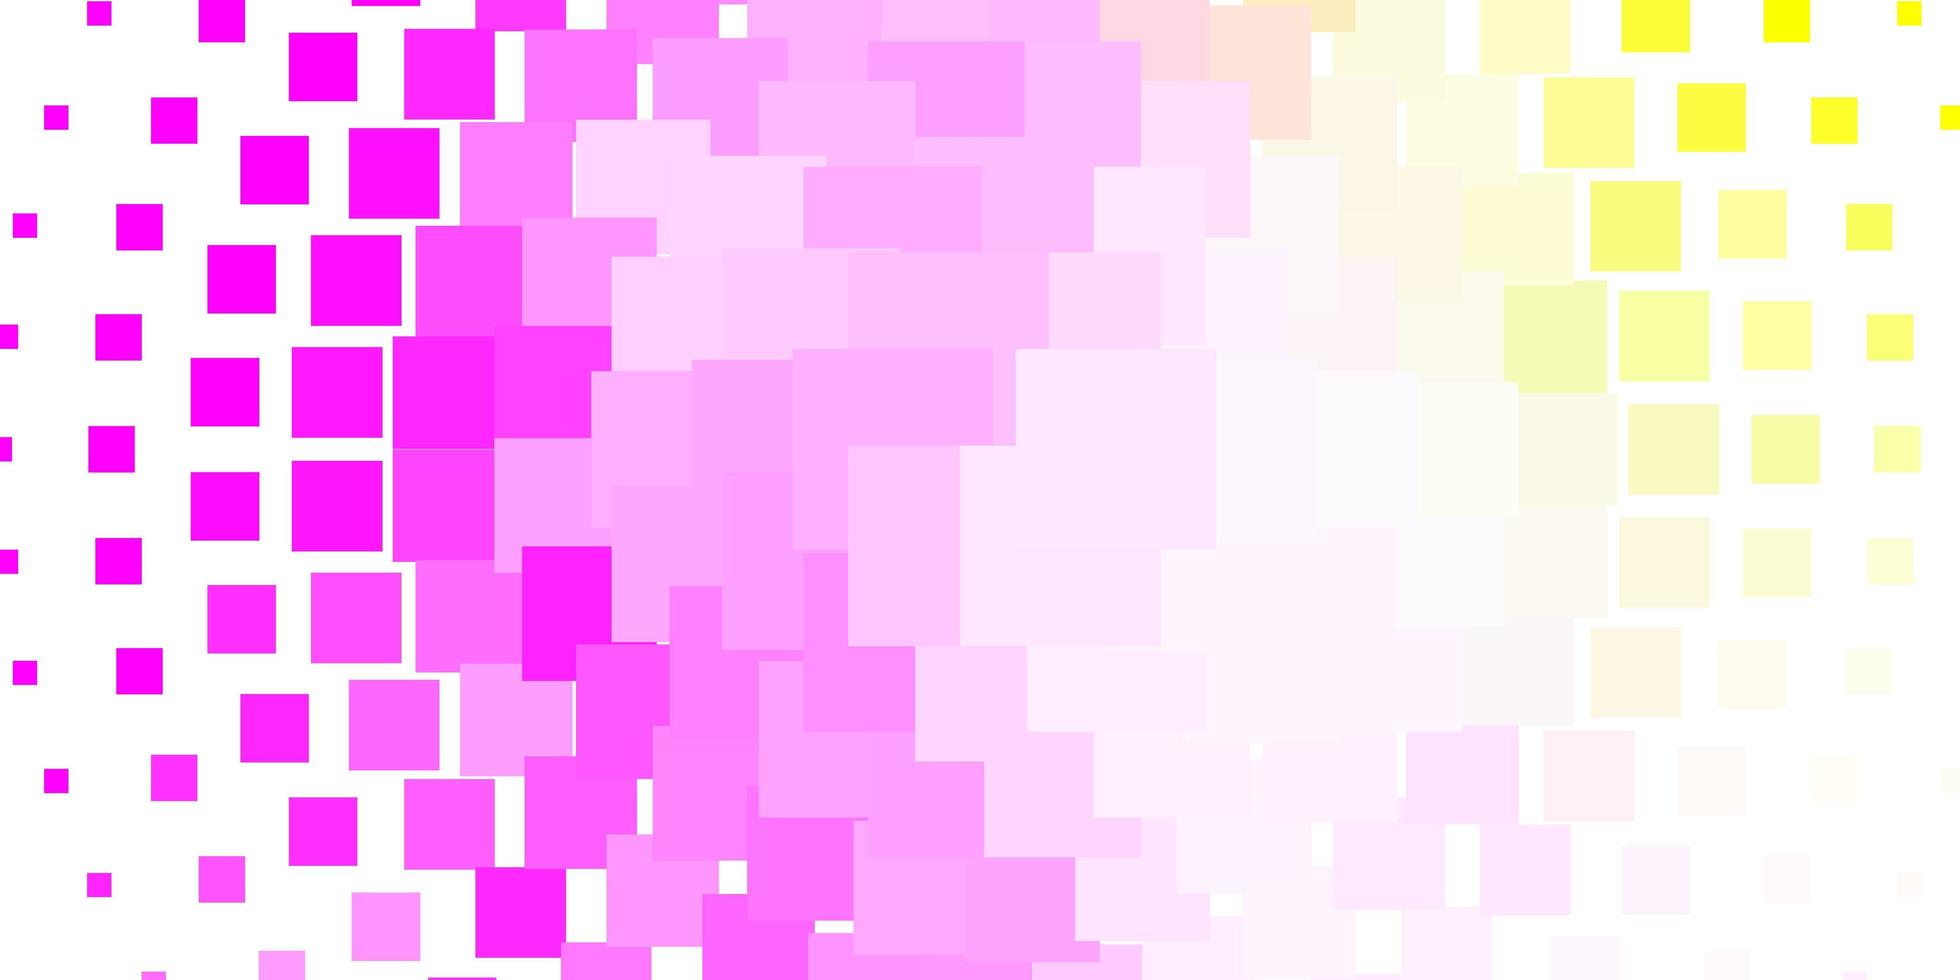 fond de vecteur jaune rose clair dans une illustration colorée de style polygonal avec des rectangles et des carrés dégradés pour la promotion de votre entreprise